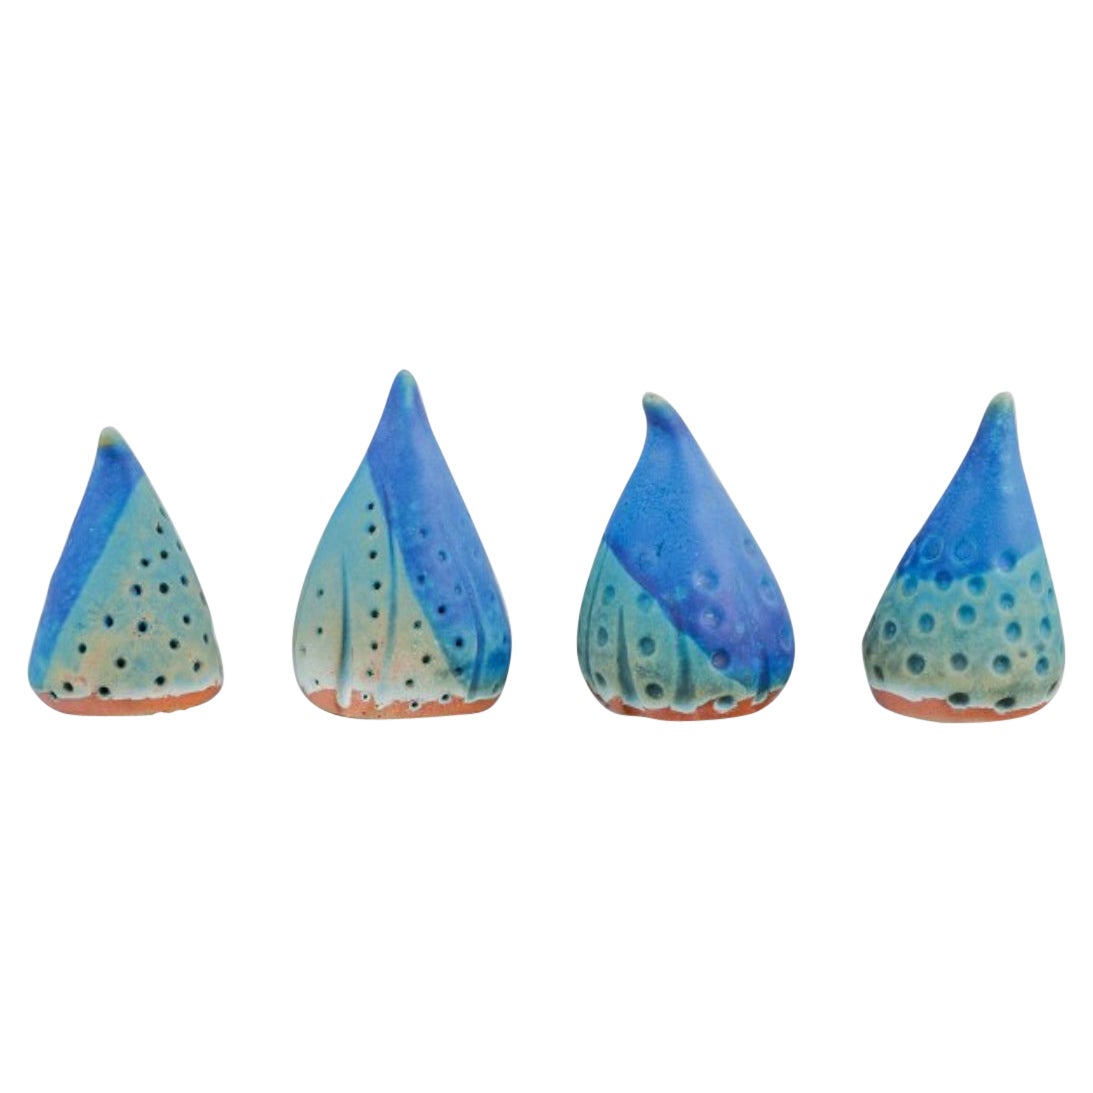 Linda Mathison. Quatre petites sculptures en céramique à glaçure turquoise.